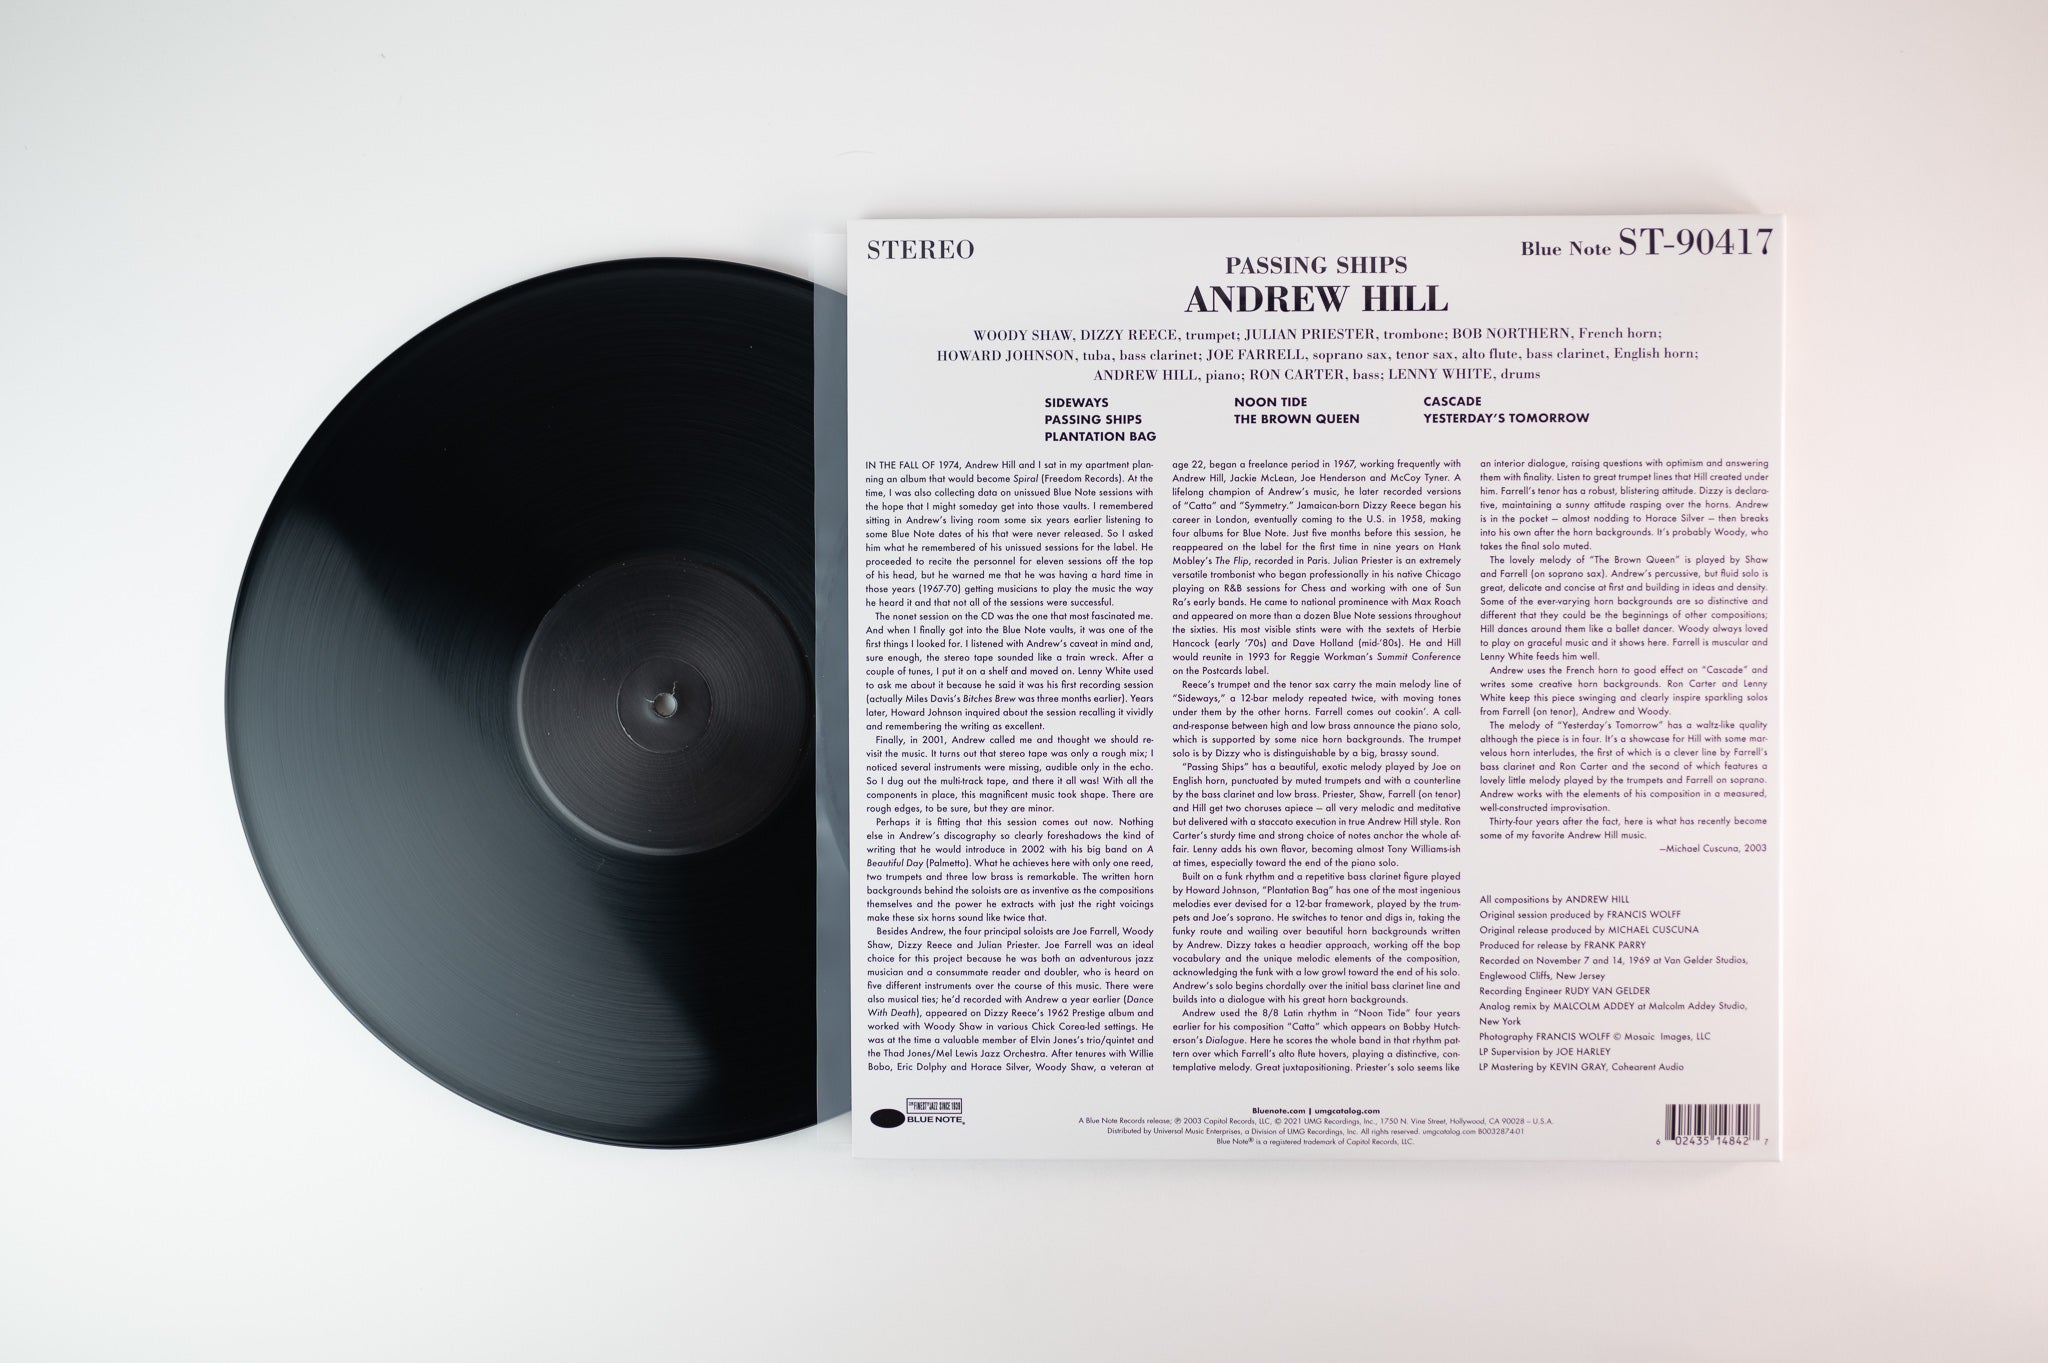 Andrew Hill - Passing Ships on Blue Note 180 Gram Tone Poet Reissue